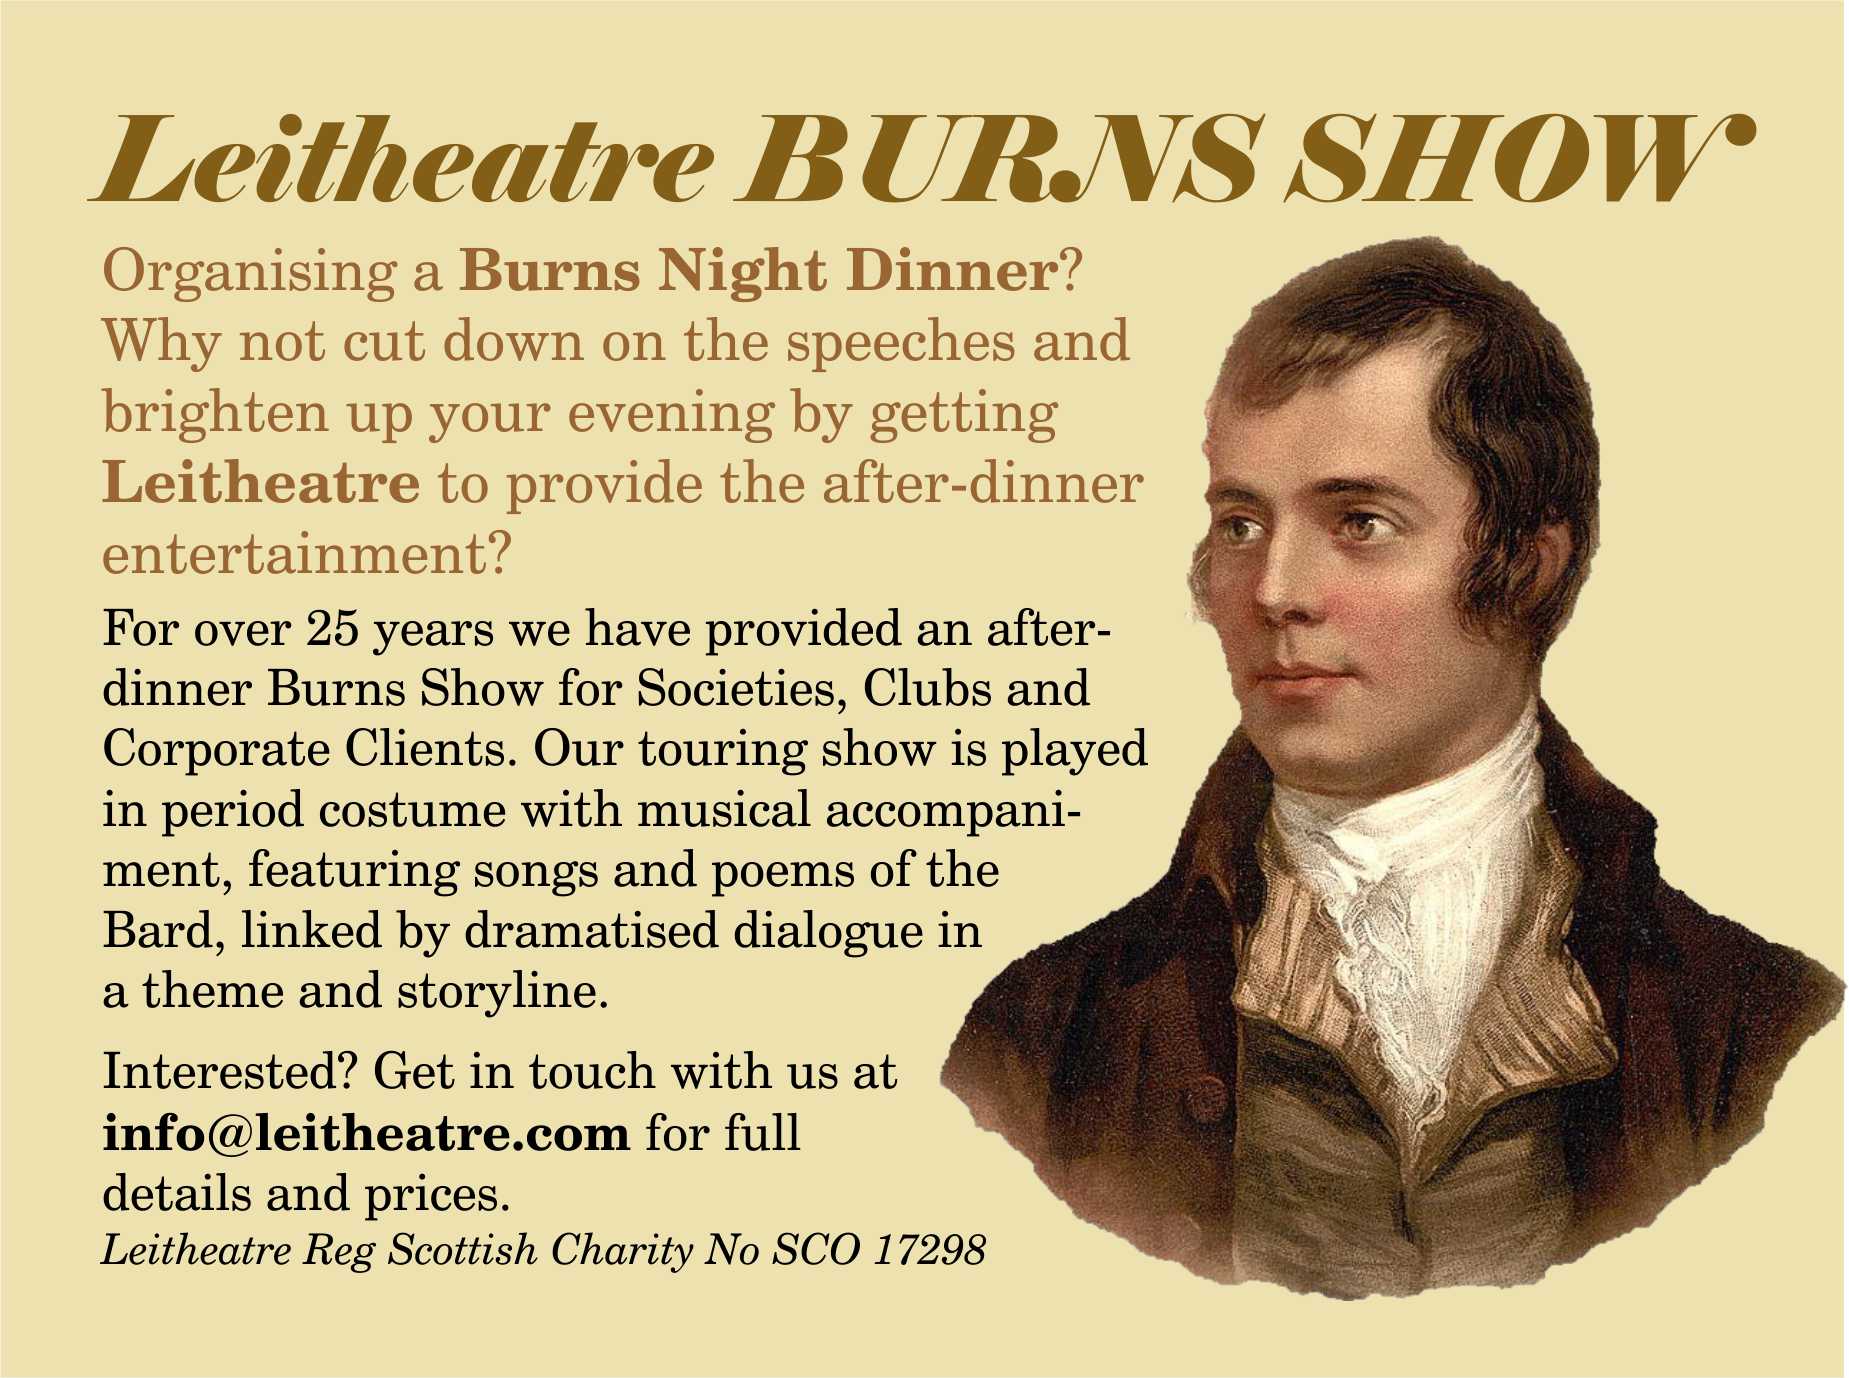 Burns show details